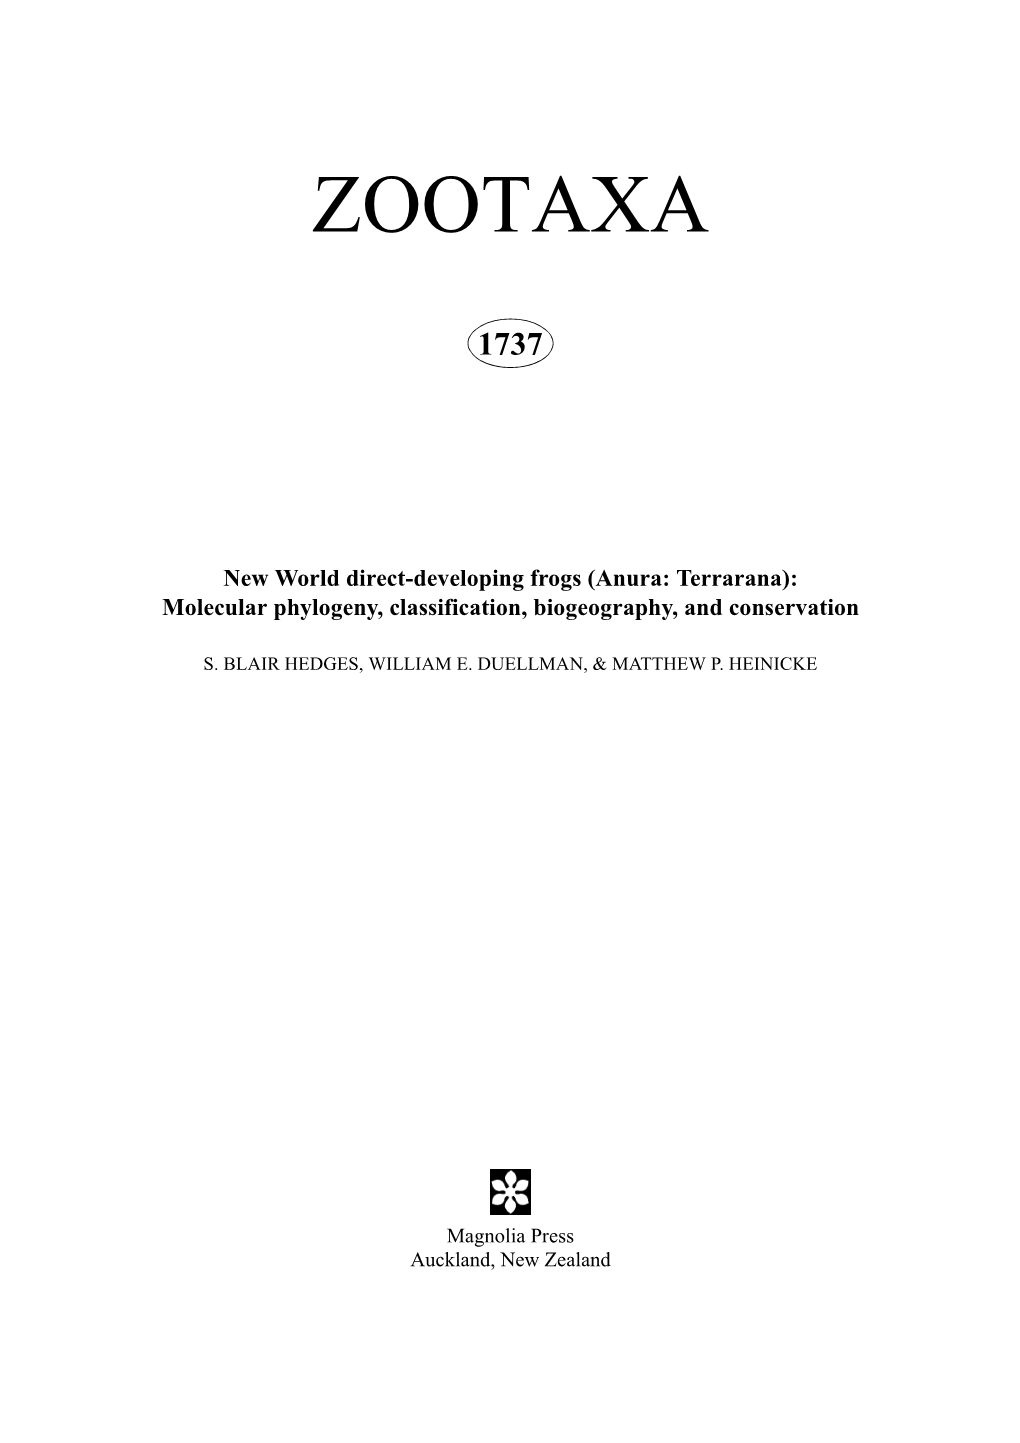 Zootaxa, New World Direct-Developing Frogs (Anura